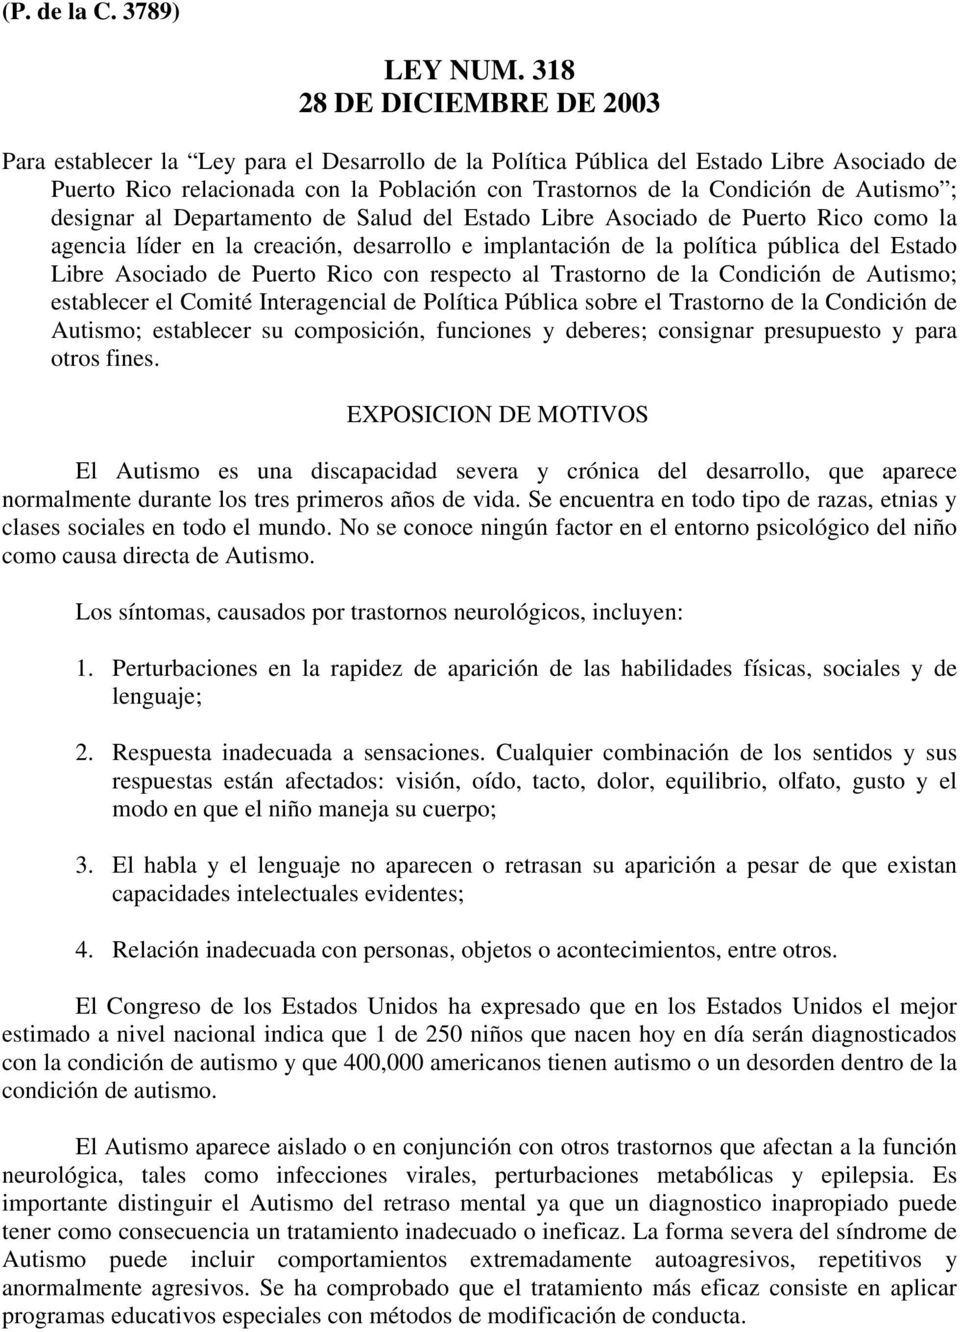 Autismo ; designar al Departamento de Salud del Estado Libre Asociado de Puerto Rico como la agencia líder en la creación, desarrollo e implantación de la política pública del Estado Libre Asociado